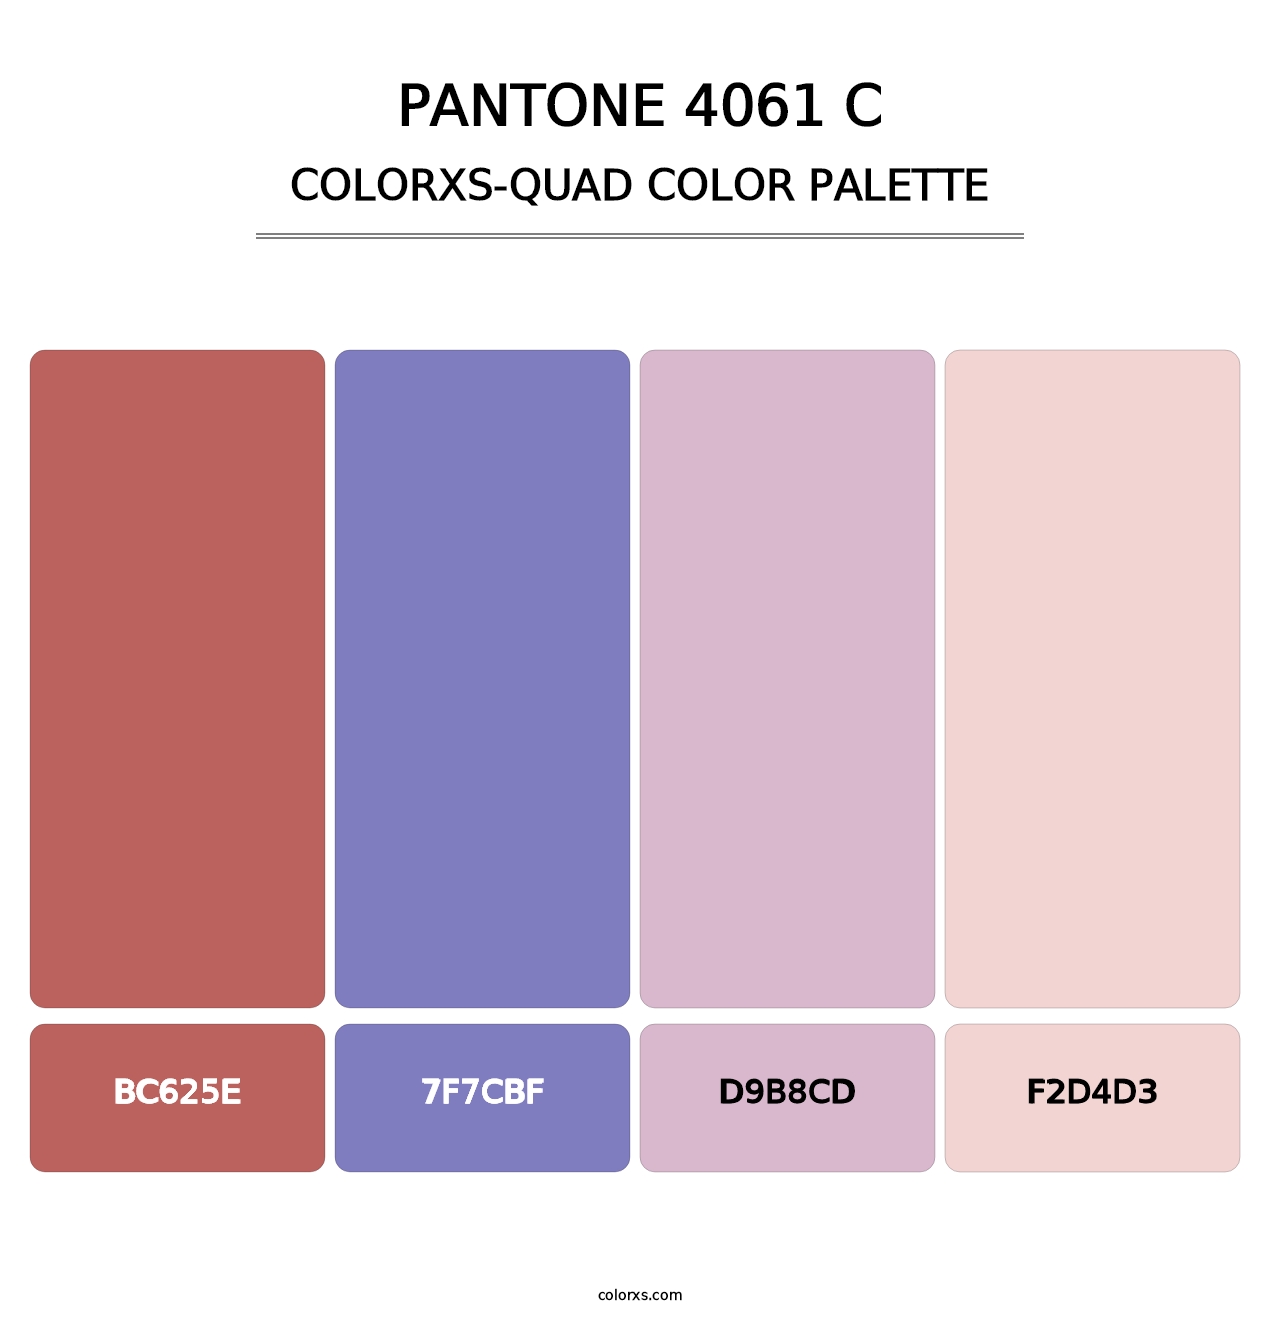 PANTONE 4061 C - Colorxs Quad Palette